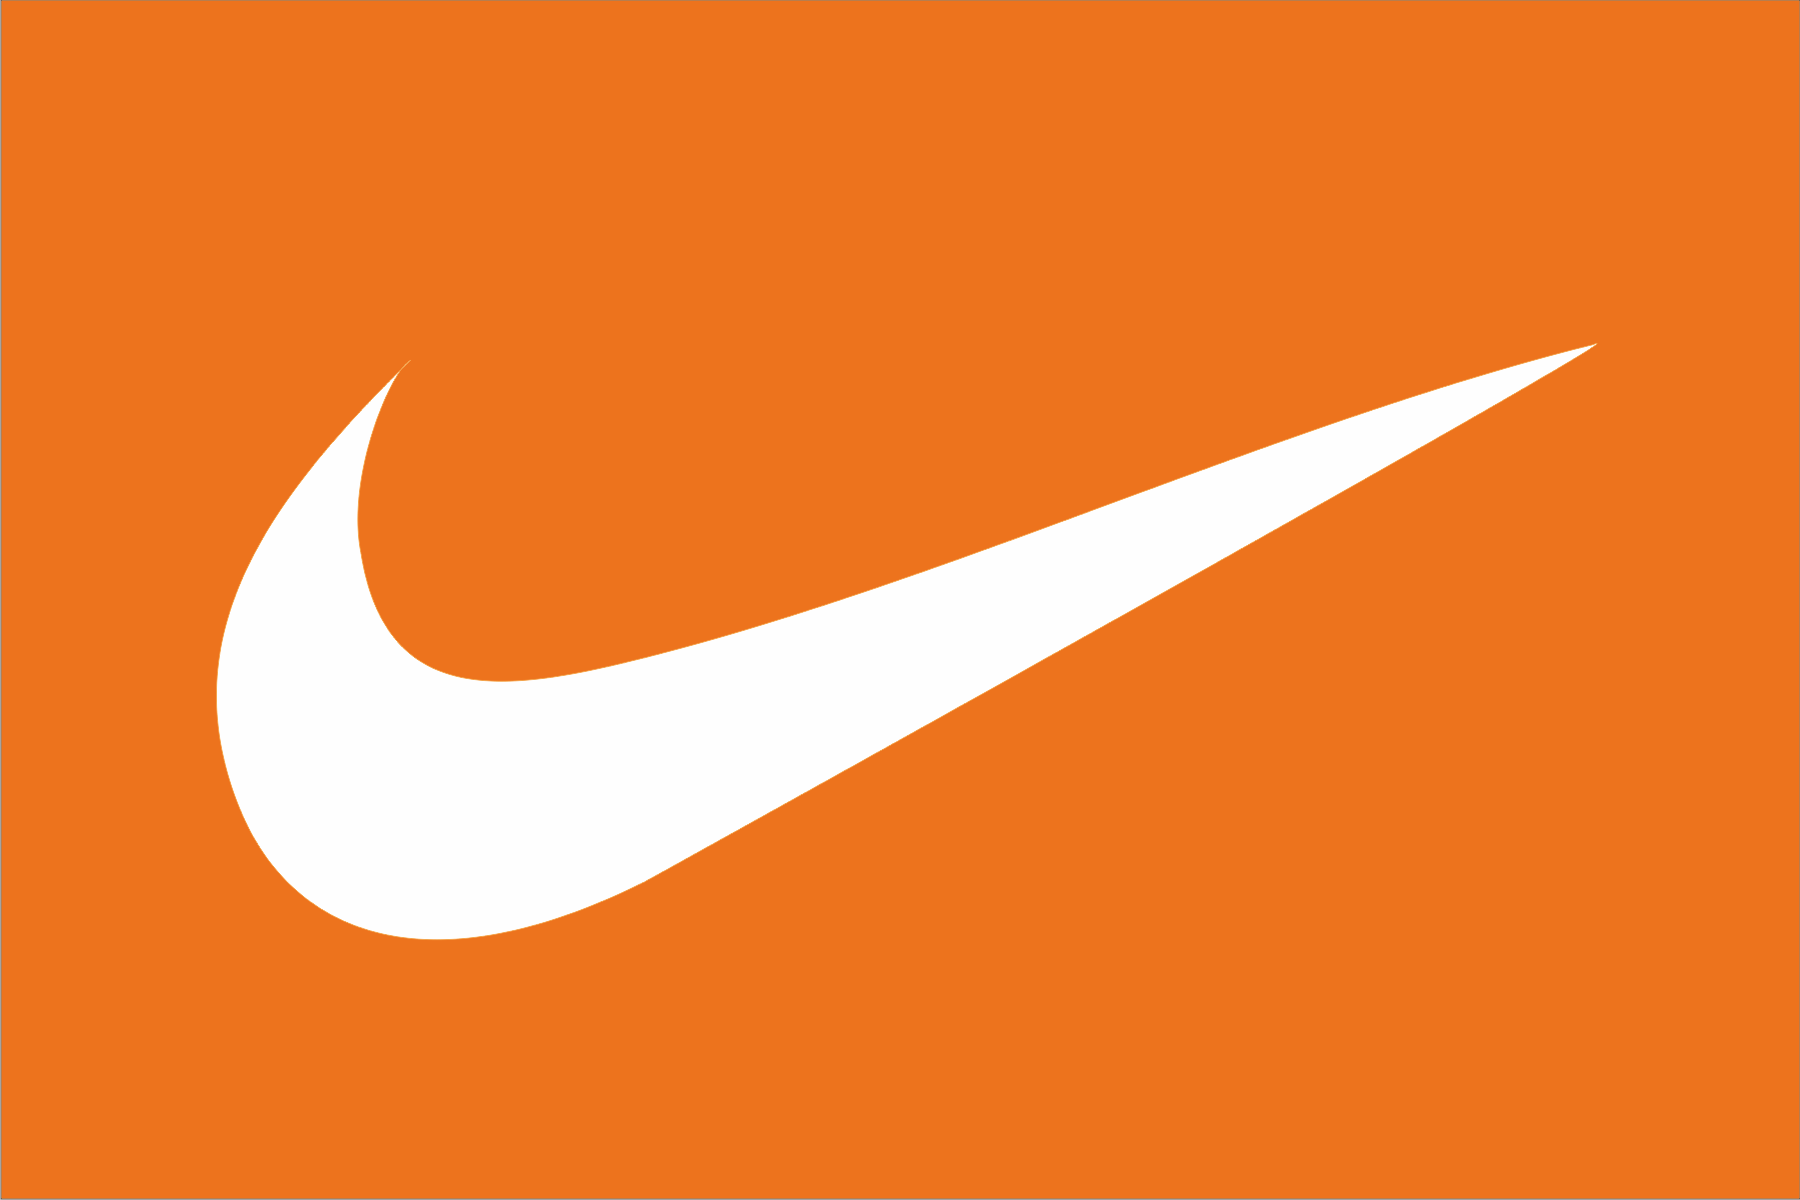 nike logo wallpaper orange